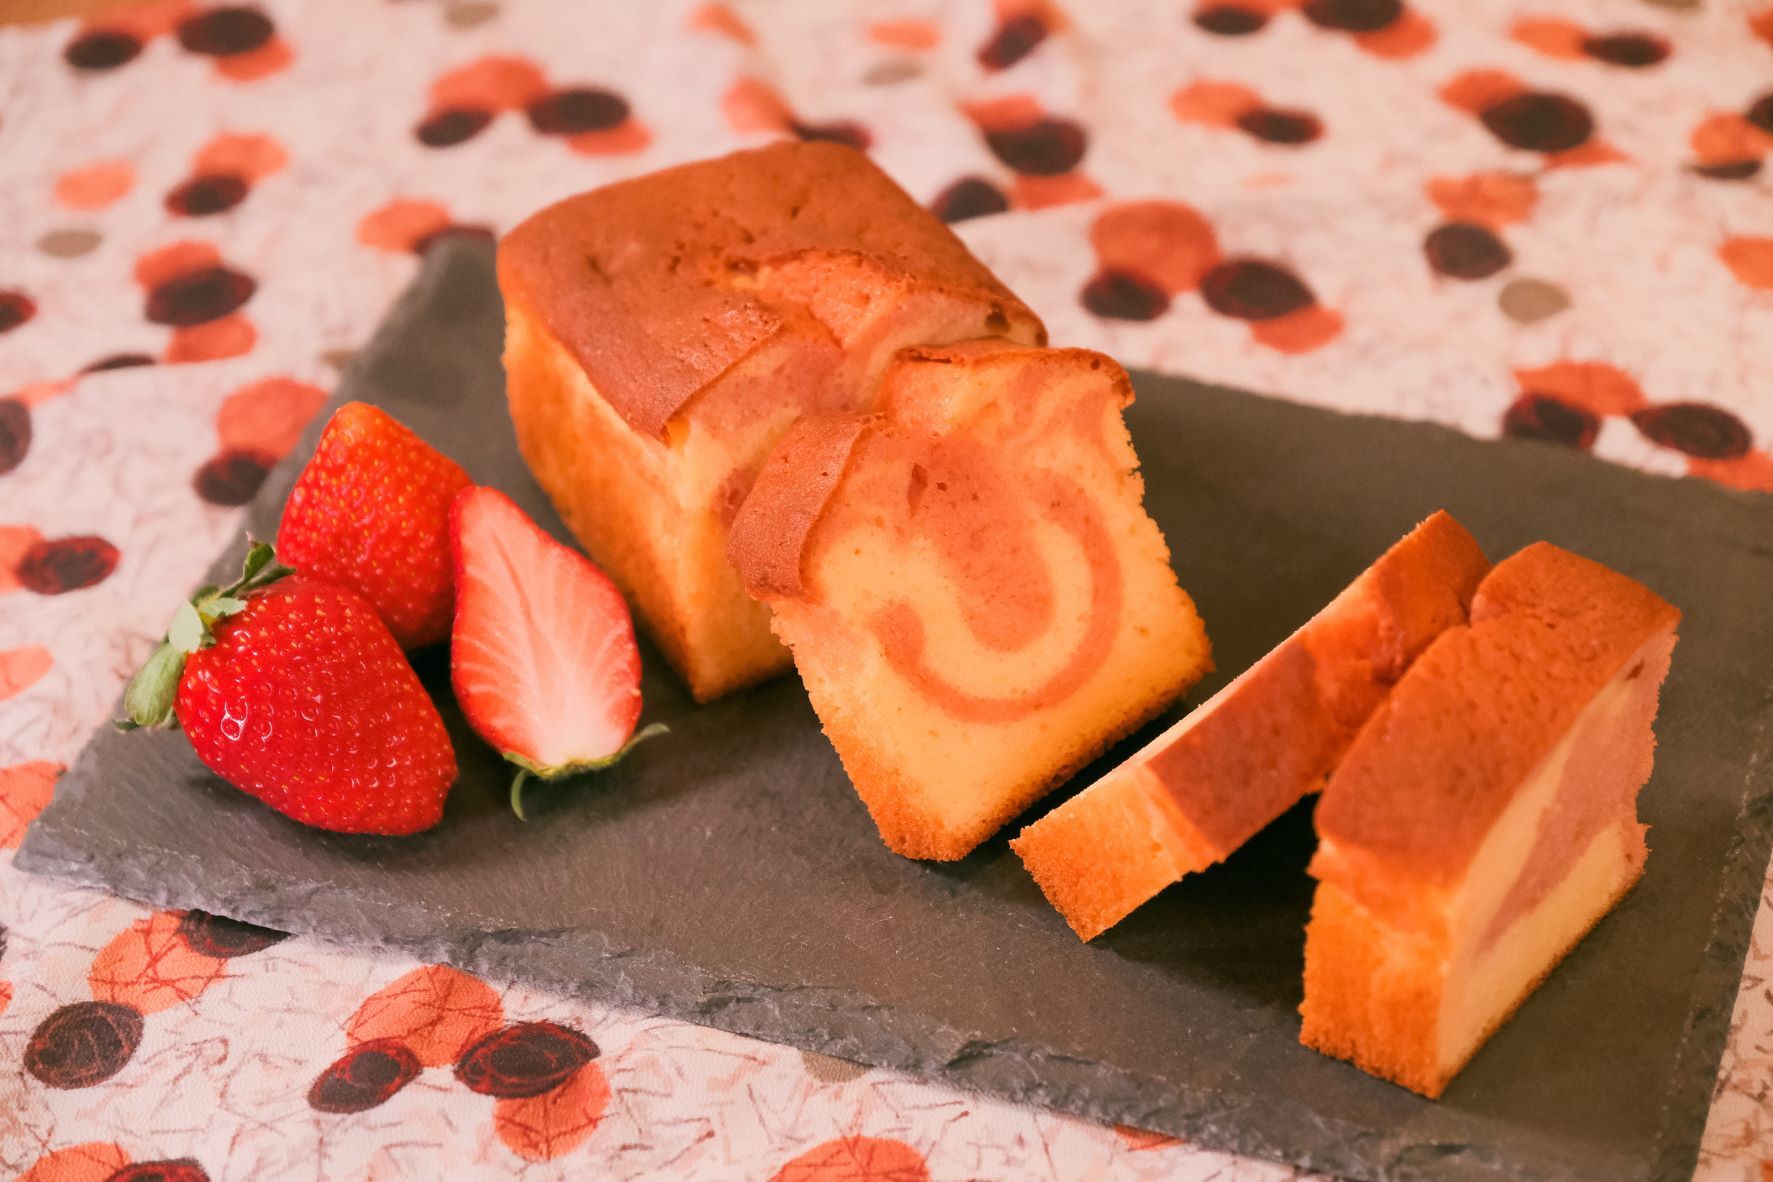 創業103年 栃木県のプリント生地工場が、
菓子生地にこだわったスイーツブランド「KiJi堂」を開始　
第一弾“とちおとめ”苺のパウンドケーキ
「恋吹雪デ・フレーズ」2月9日から販売